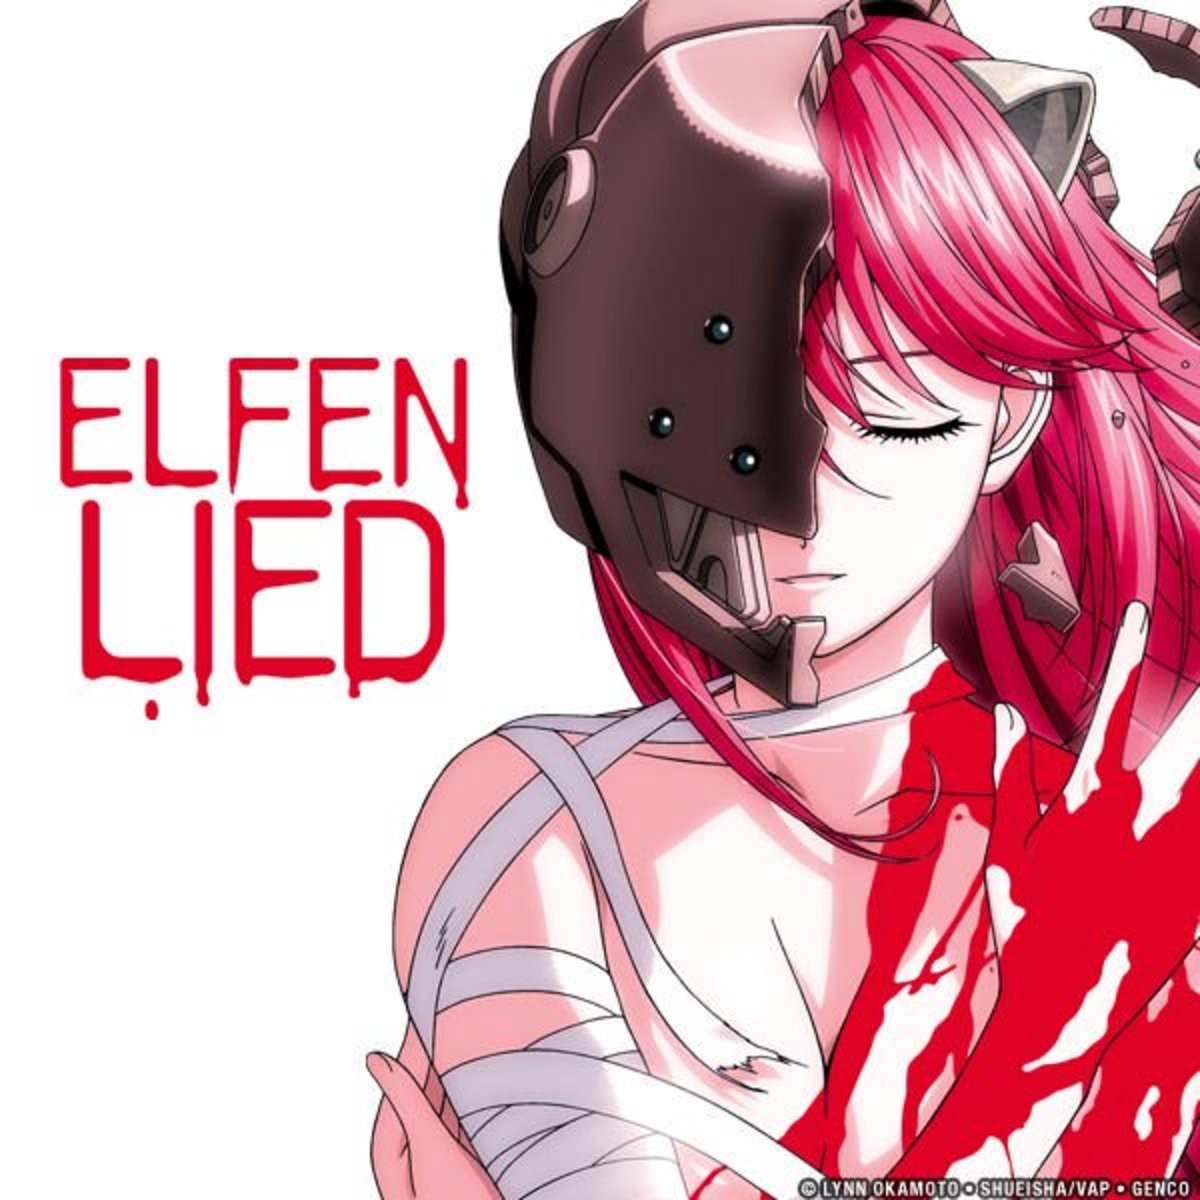 Elfen Lied  Anime, Ficção científica, Cientifica